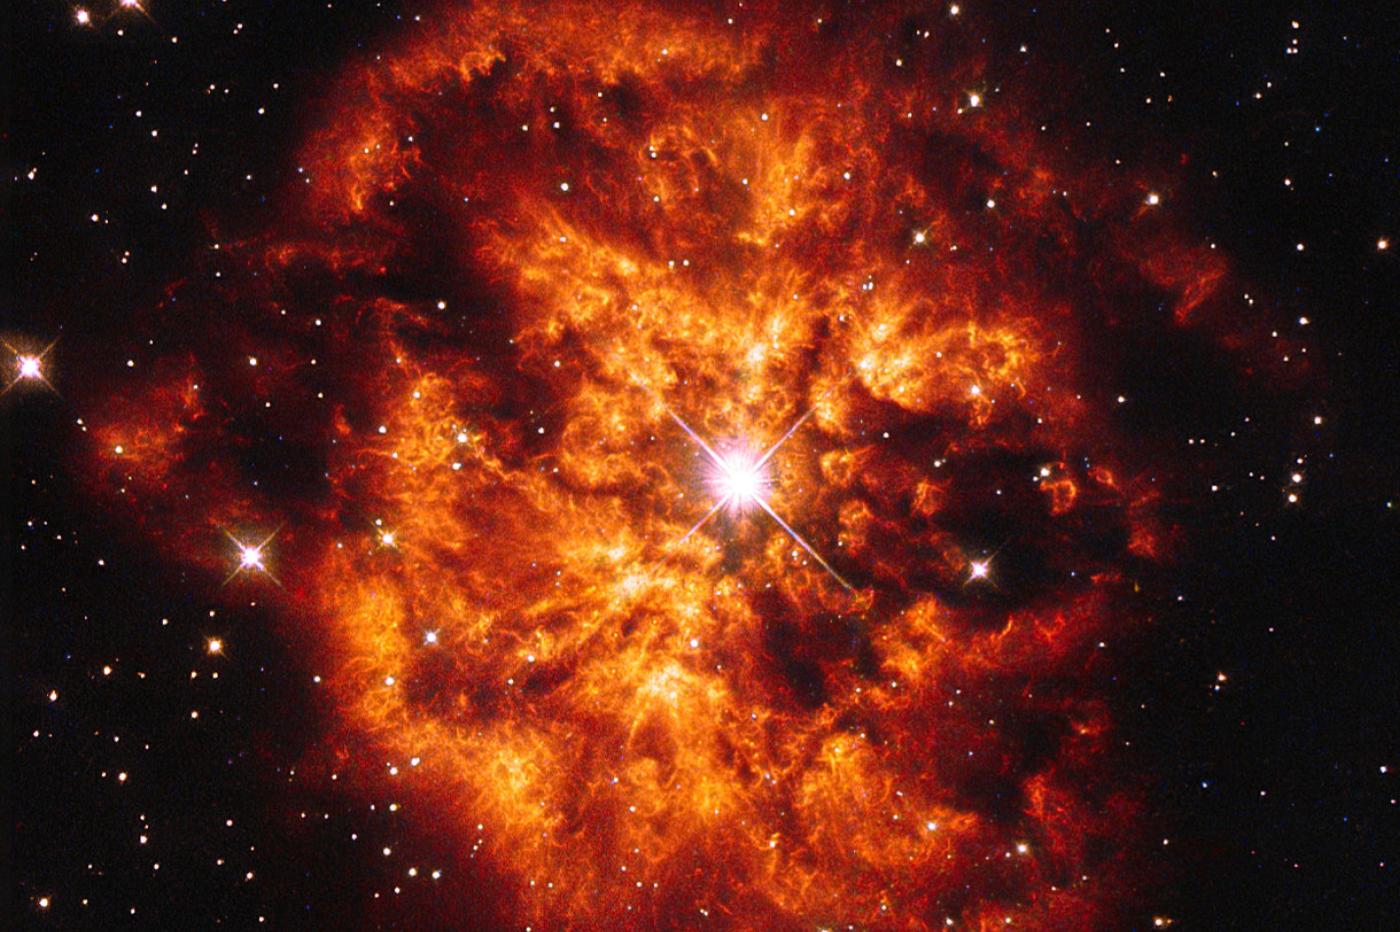 La nébuleuse de WR 124 capturée par Hubble